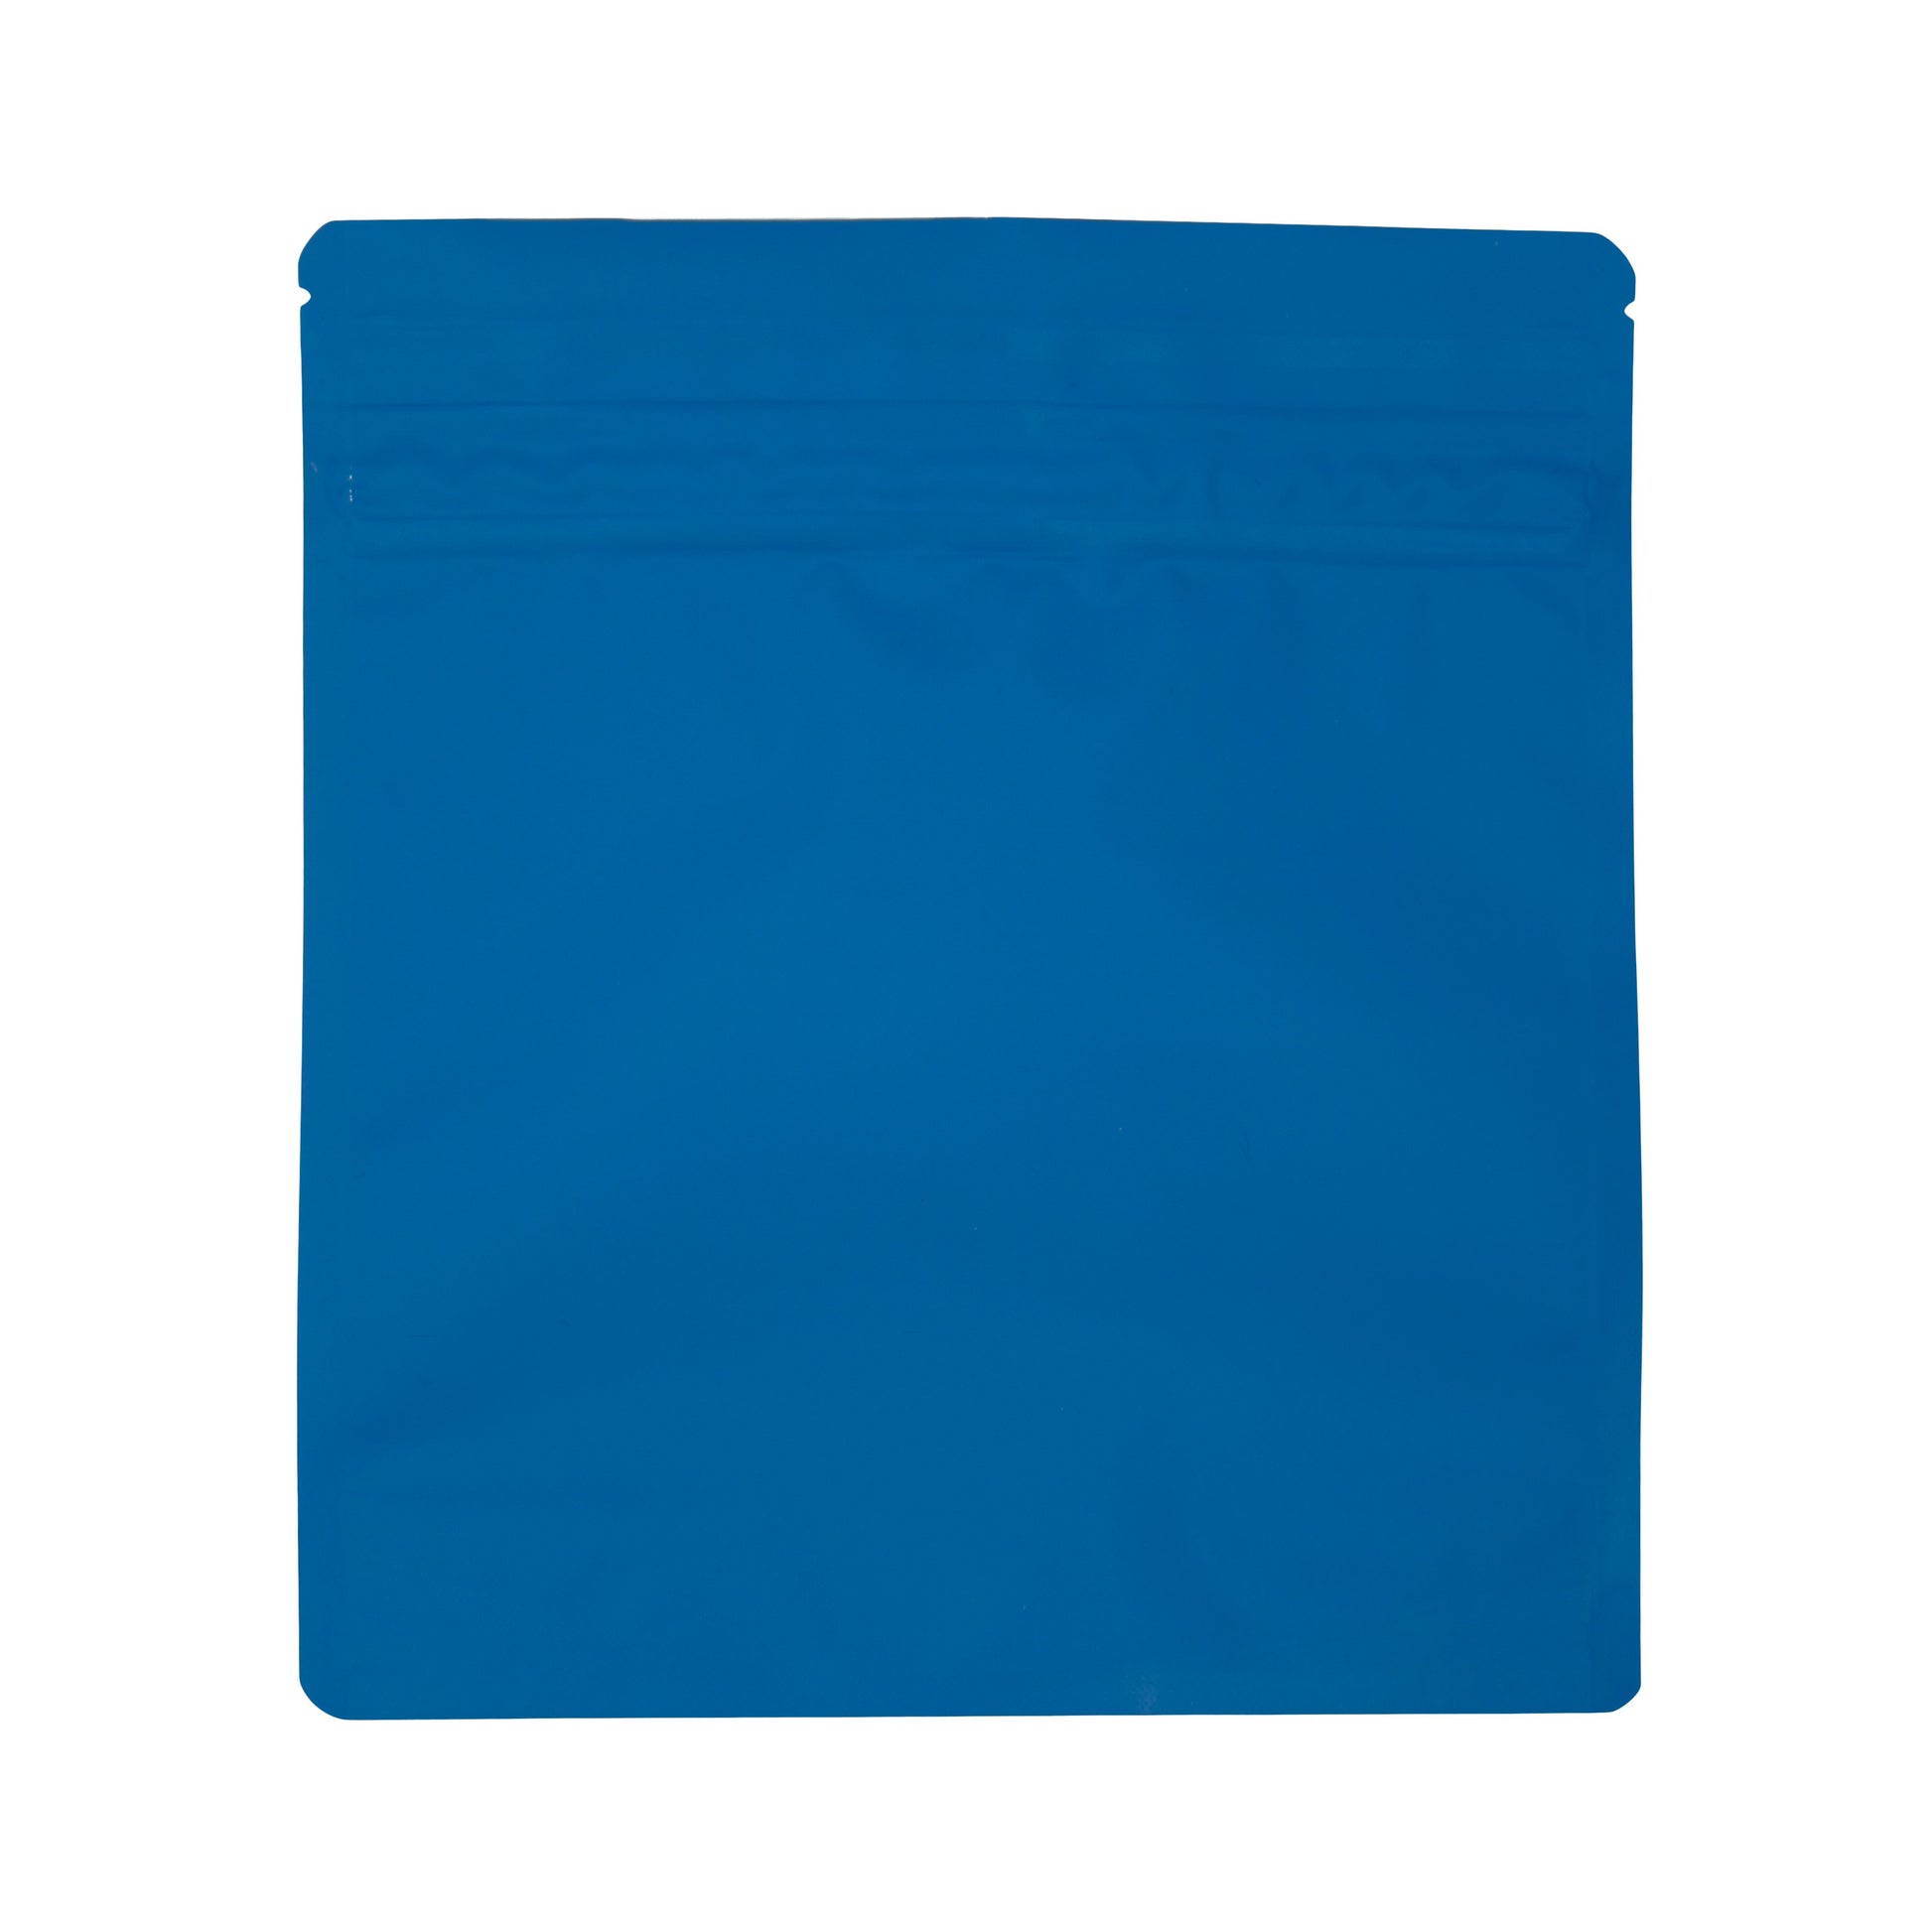 Bag King Child-Resistant Wide Mouth Bag (1 oz) 7" x 7.9" Matte Blue